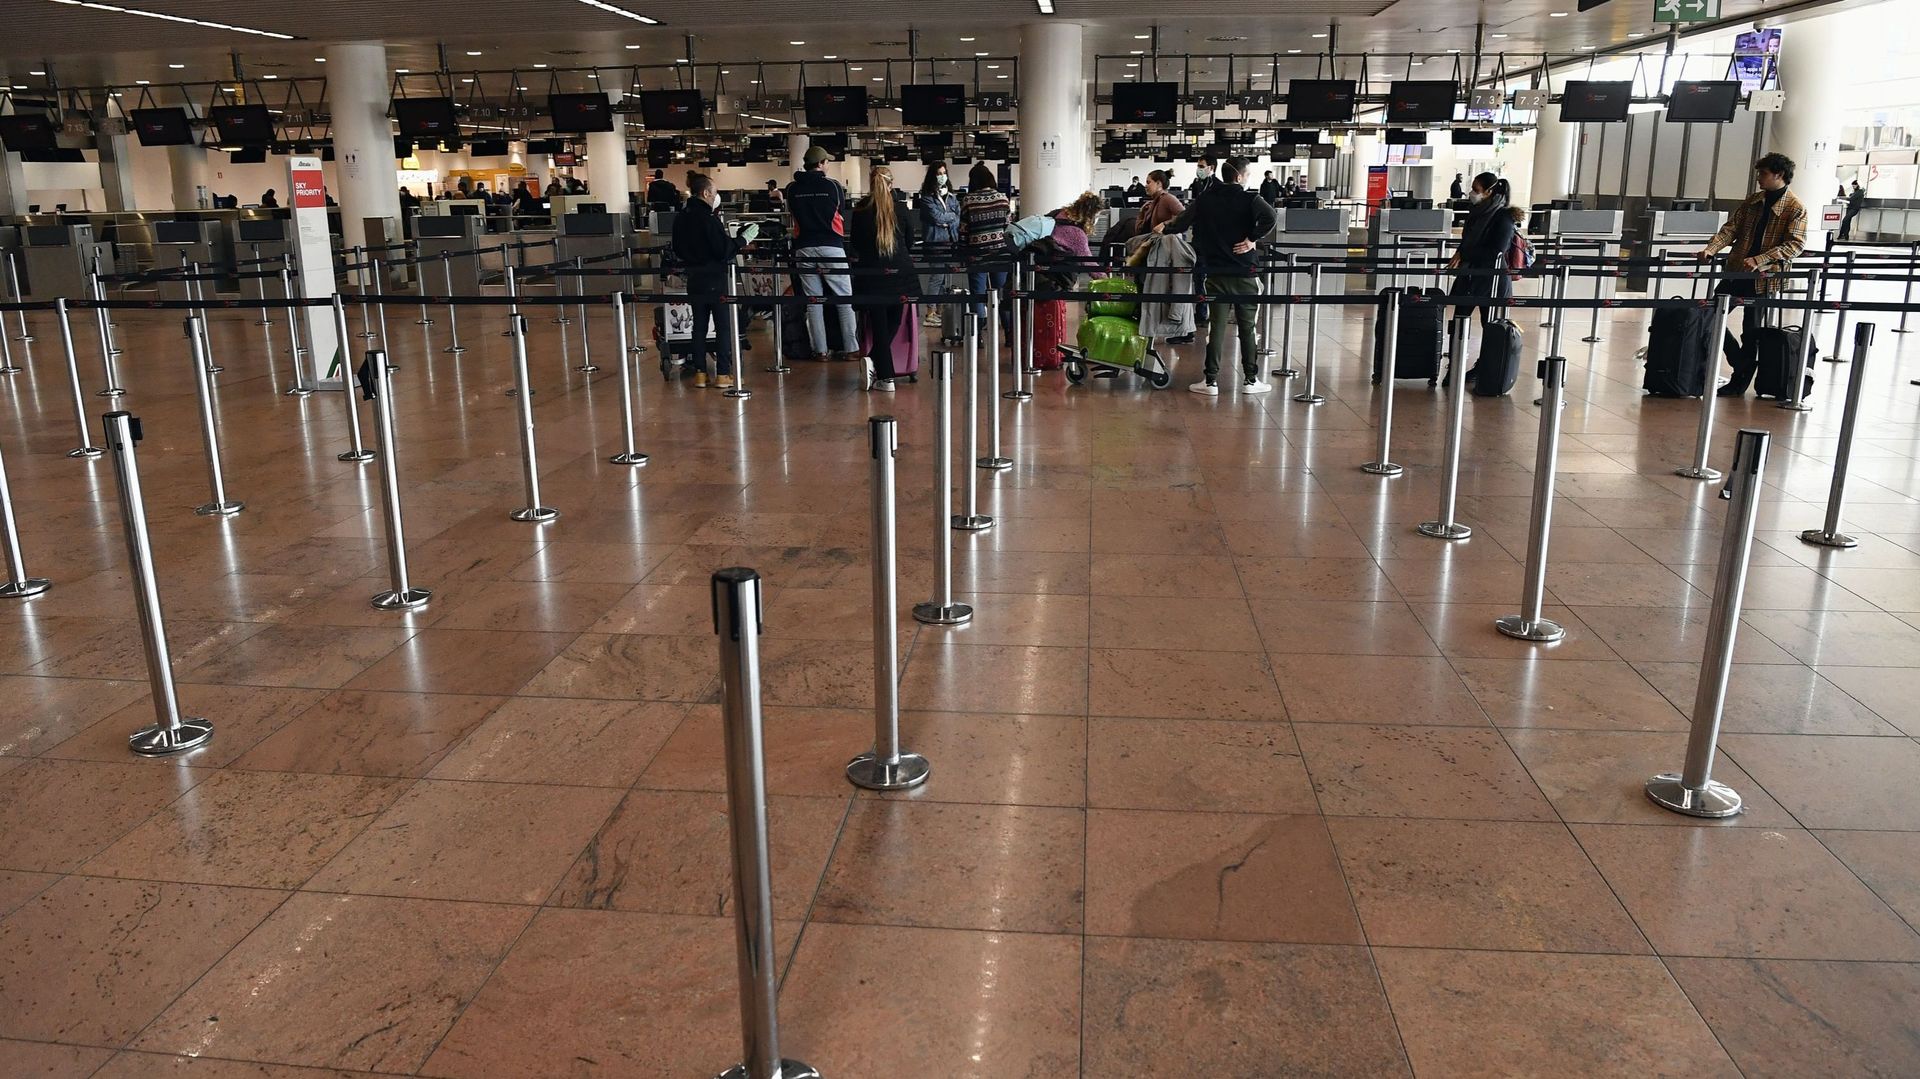 coronavirus-brussels-airport-n-accueillera-plus-que-5-des-vols-passagers-prevus-d-ici-la-fin-de-la-semaine